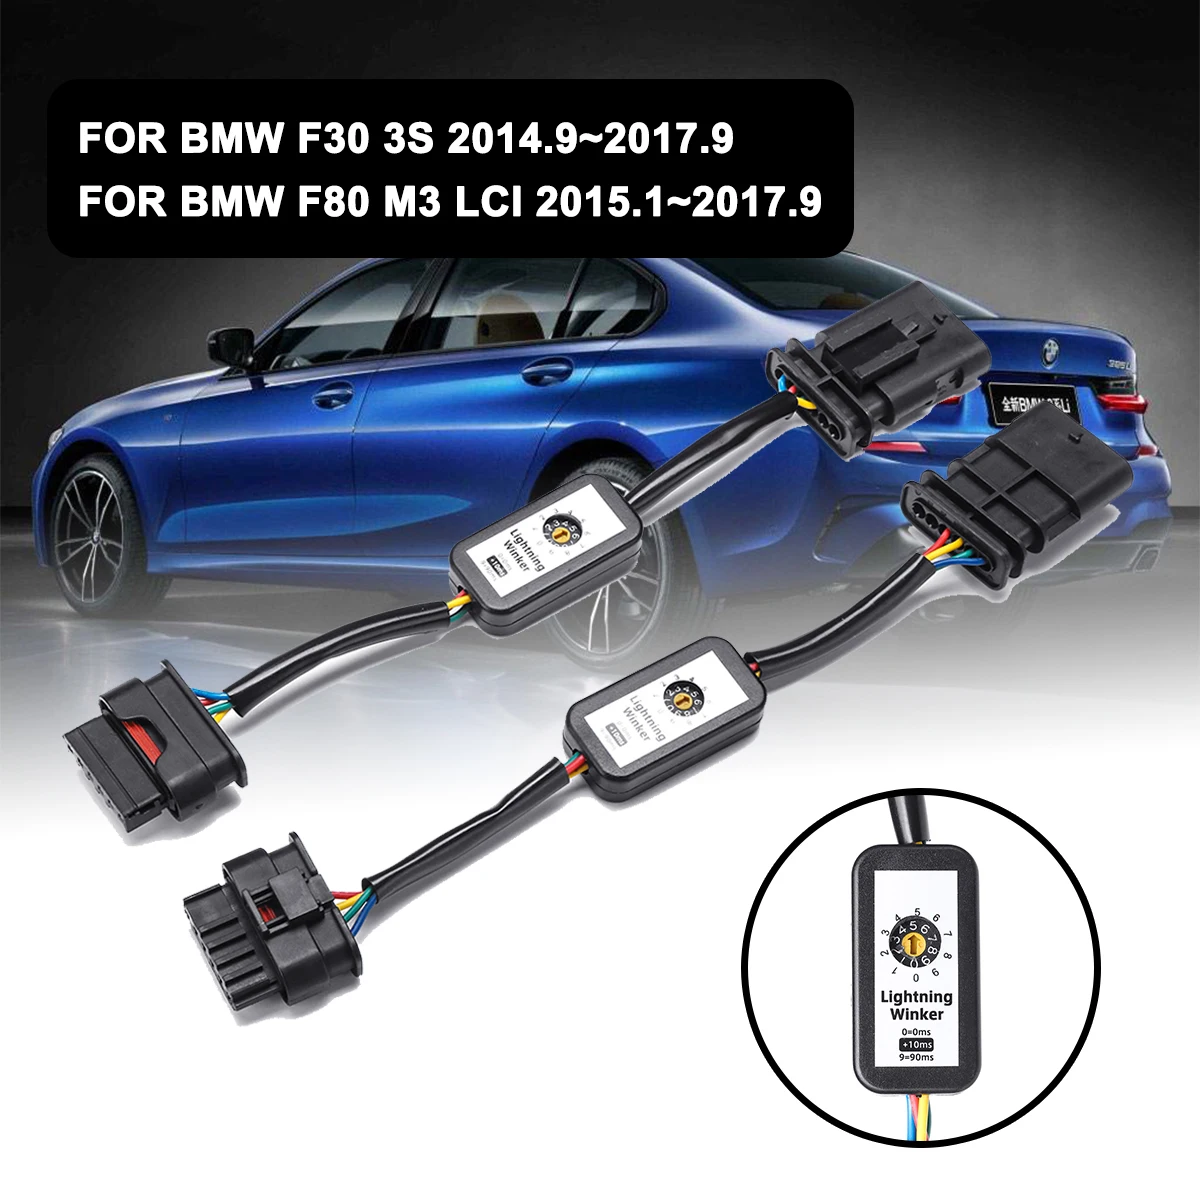 

Модуль светодиодной подсветки для BMW F30 3s F80 M3 LCI, динамический поворотный индикатор, жгут проводов, левый и правый, 2 шт.